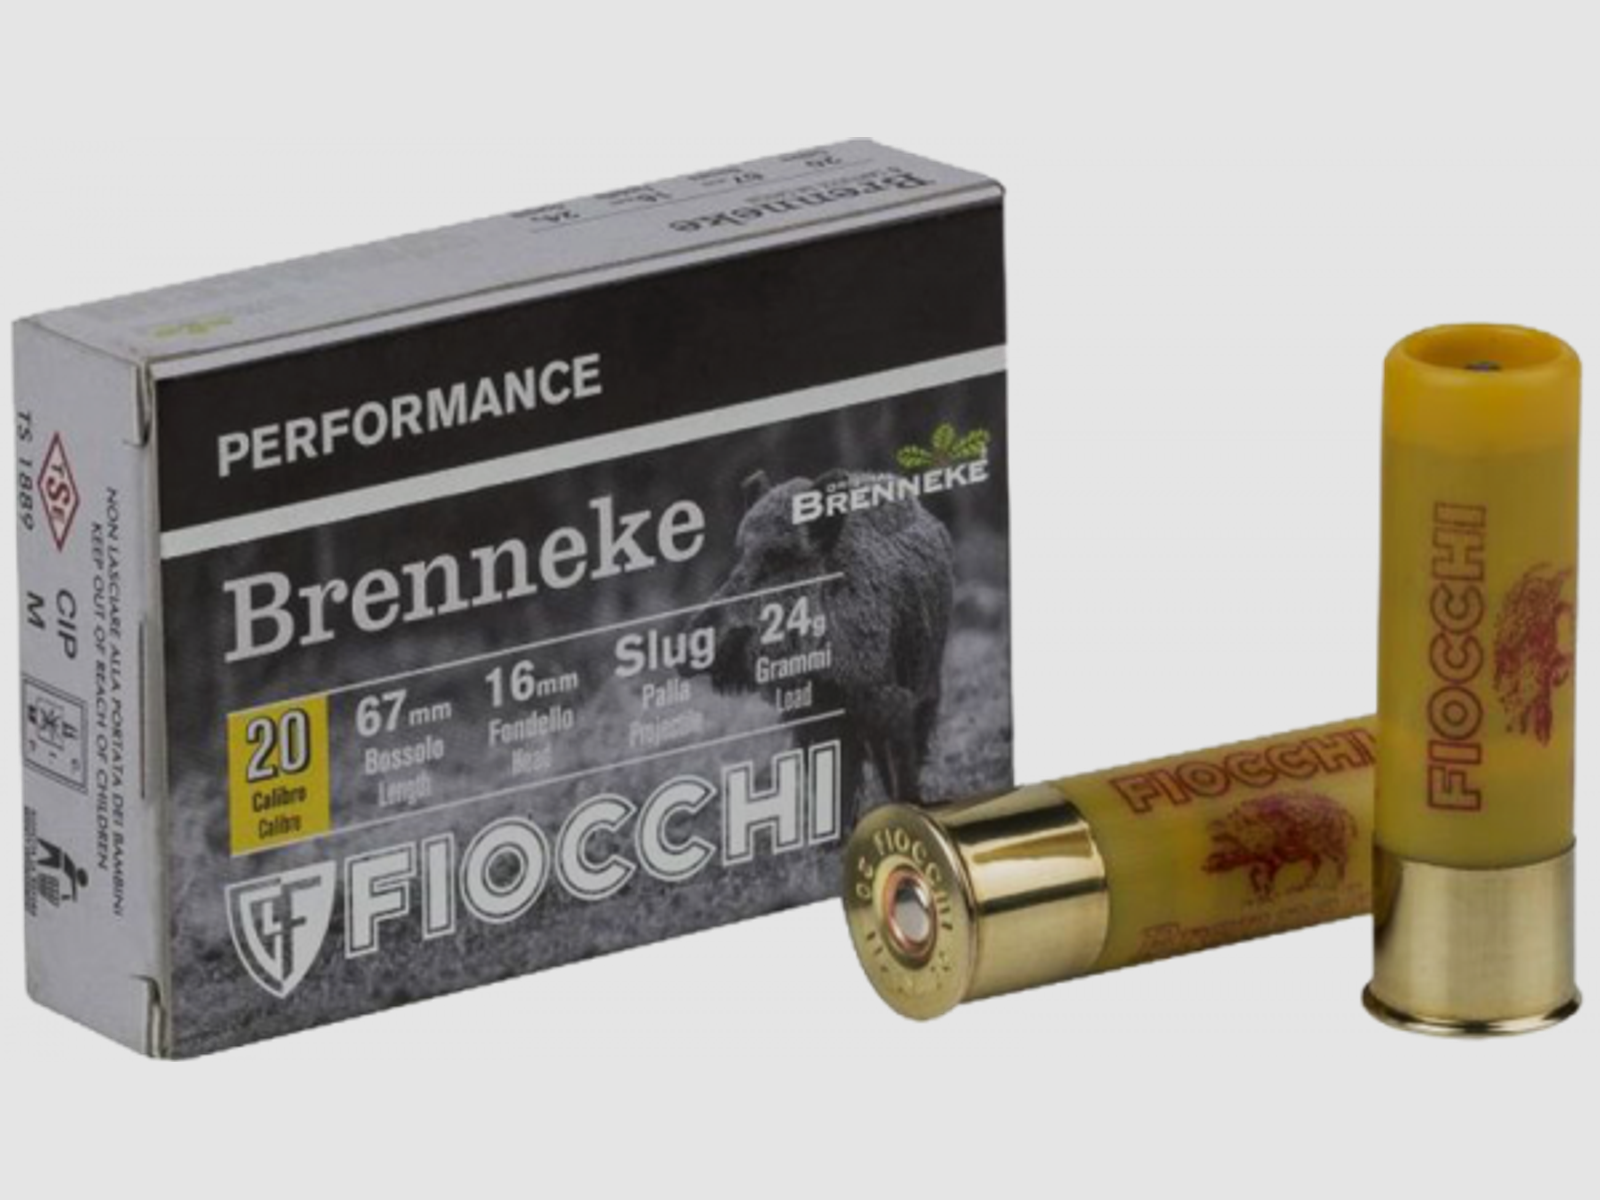 Fiocchi Performance 20/67 Brenneke Classic 371 grs Flintenlaufgeschoss